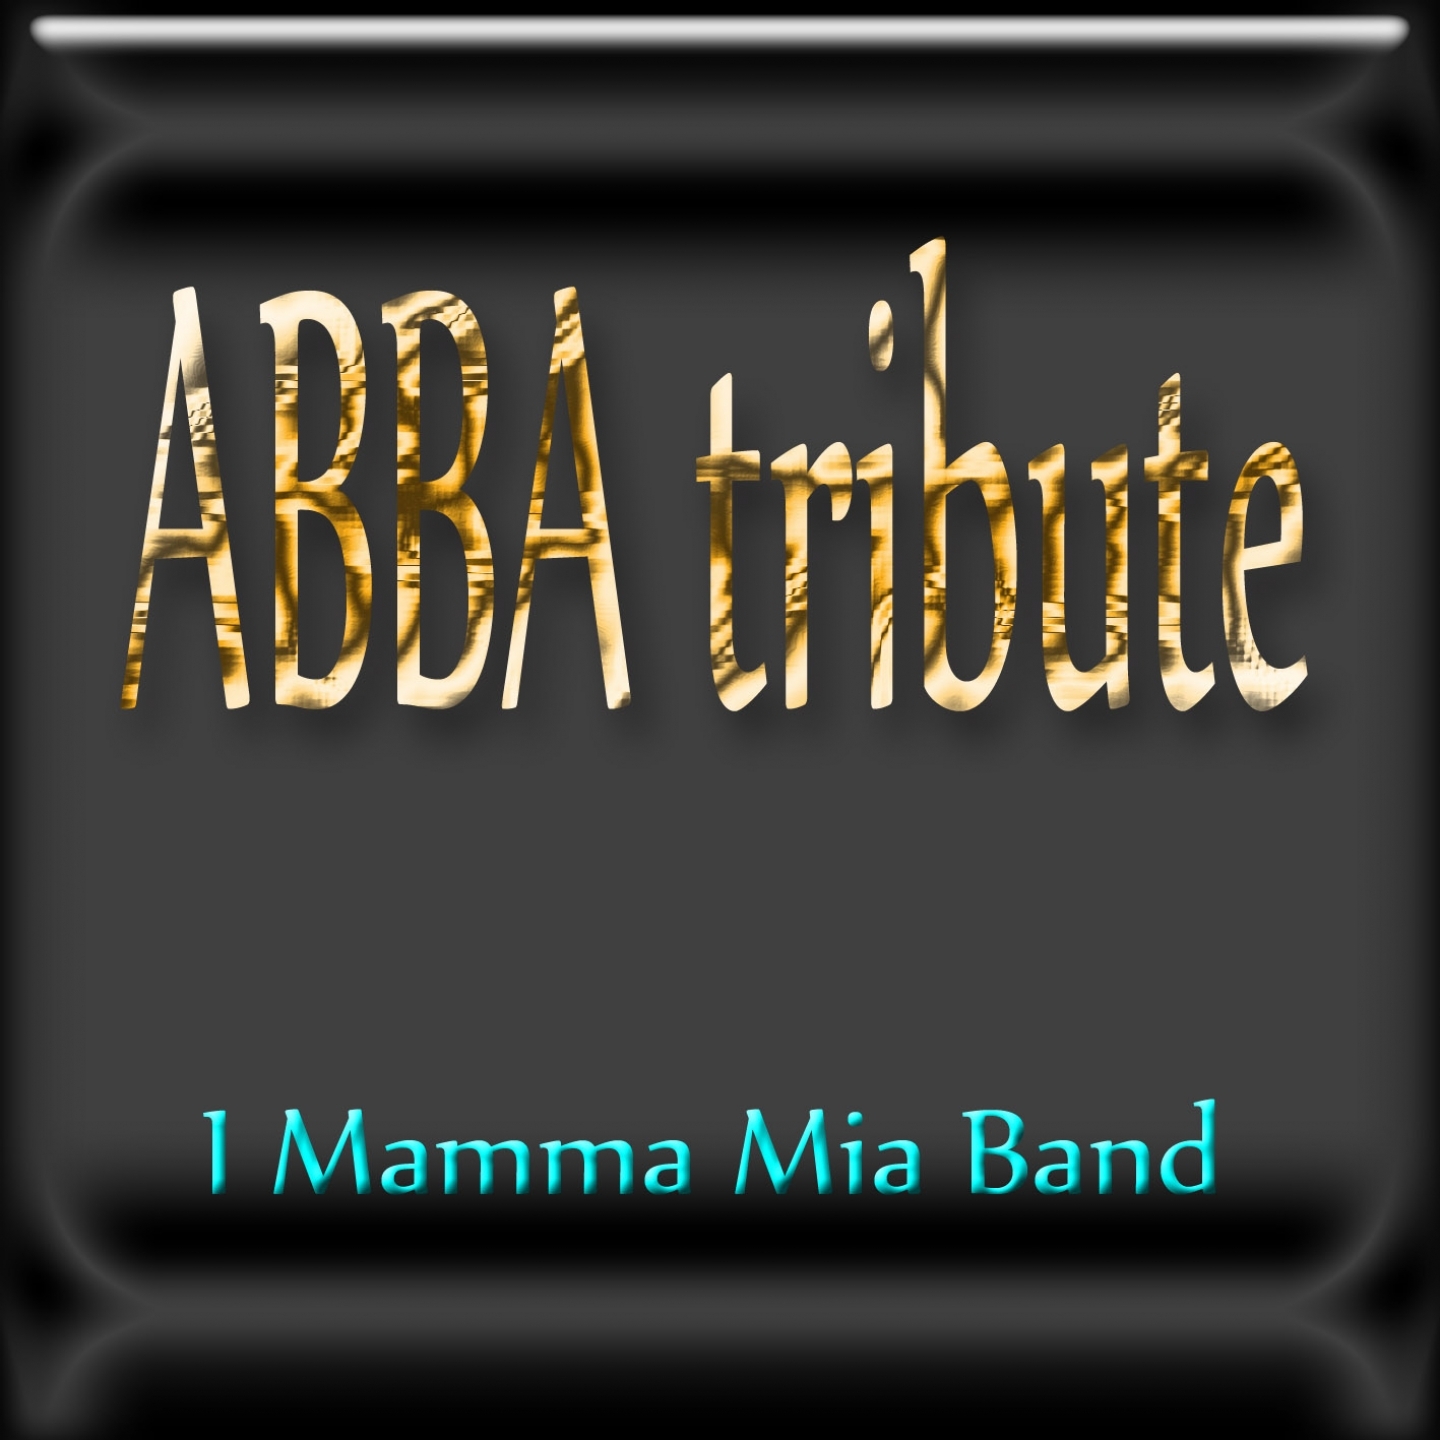 ABBA tribute